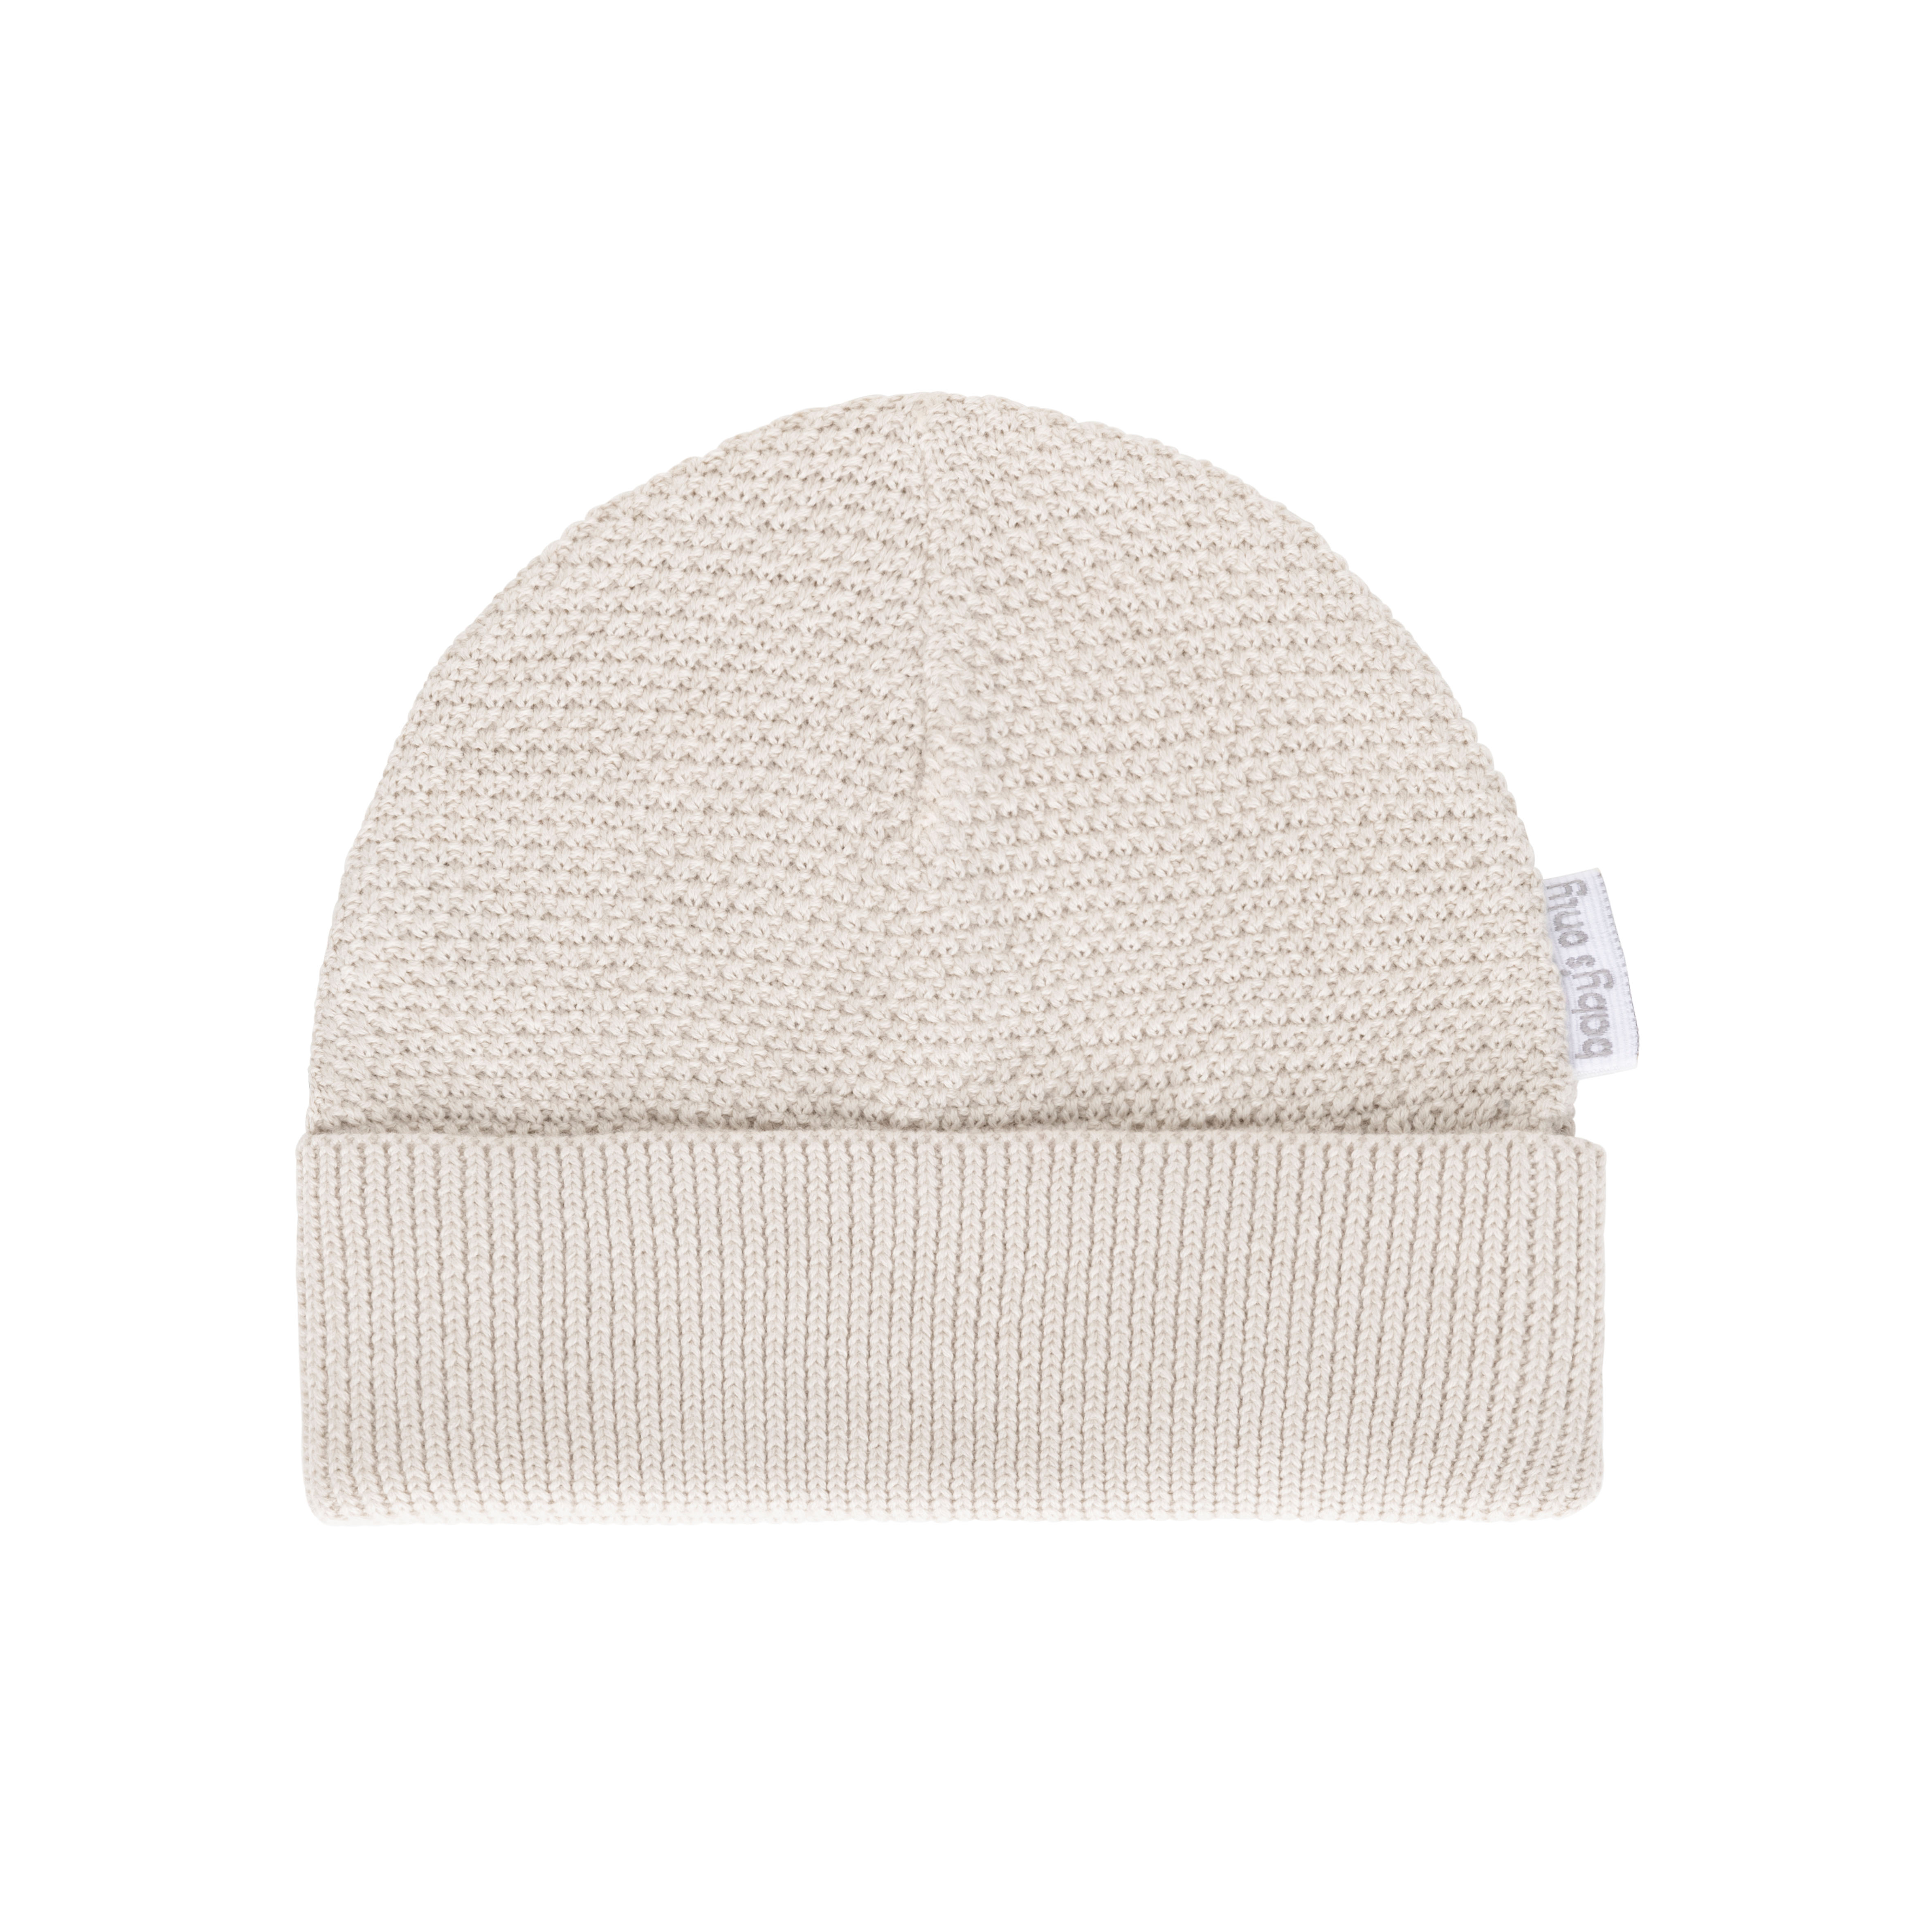 Hat Willow warm linen - 0-3 months